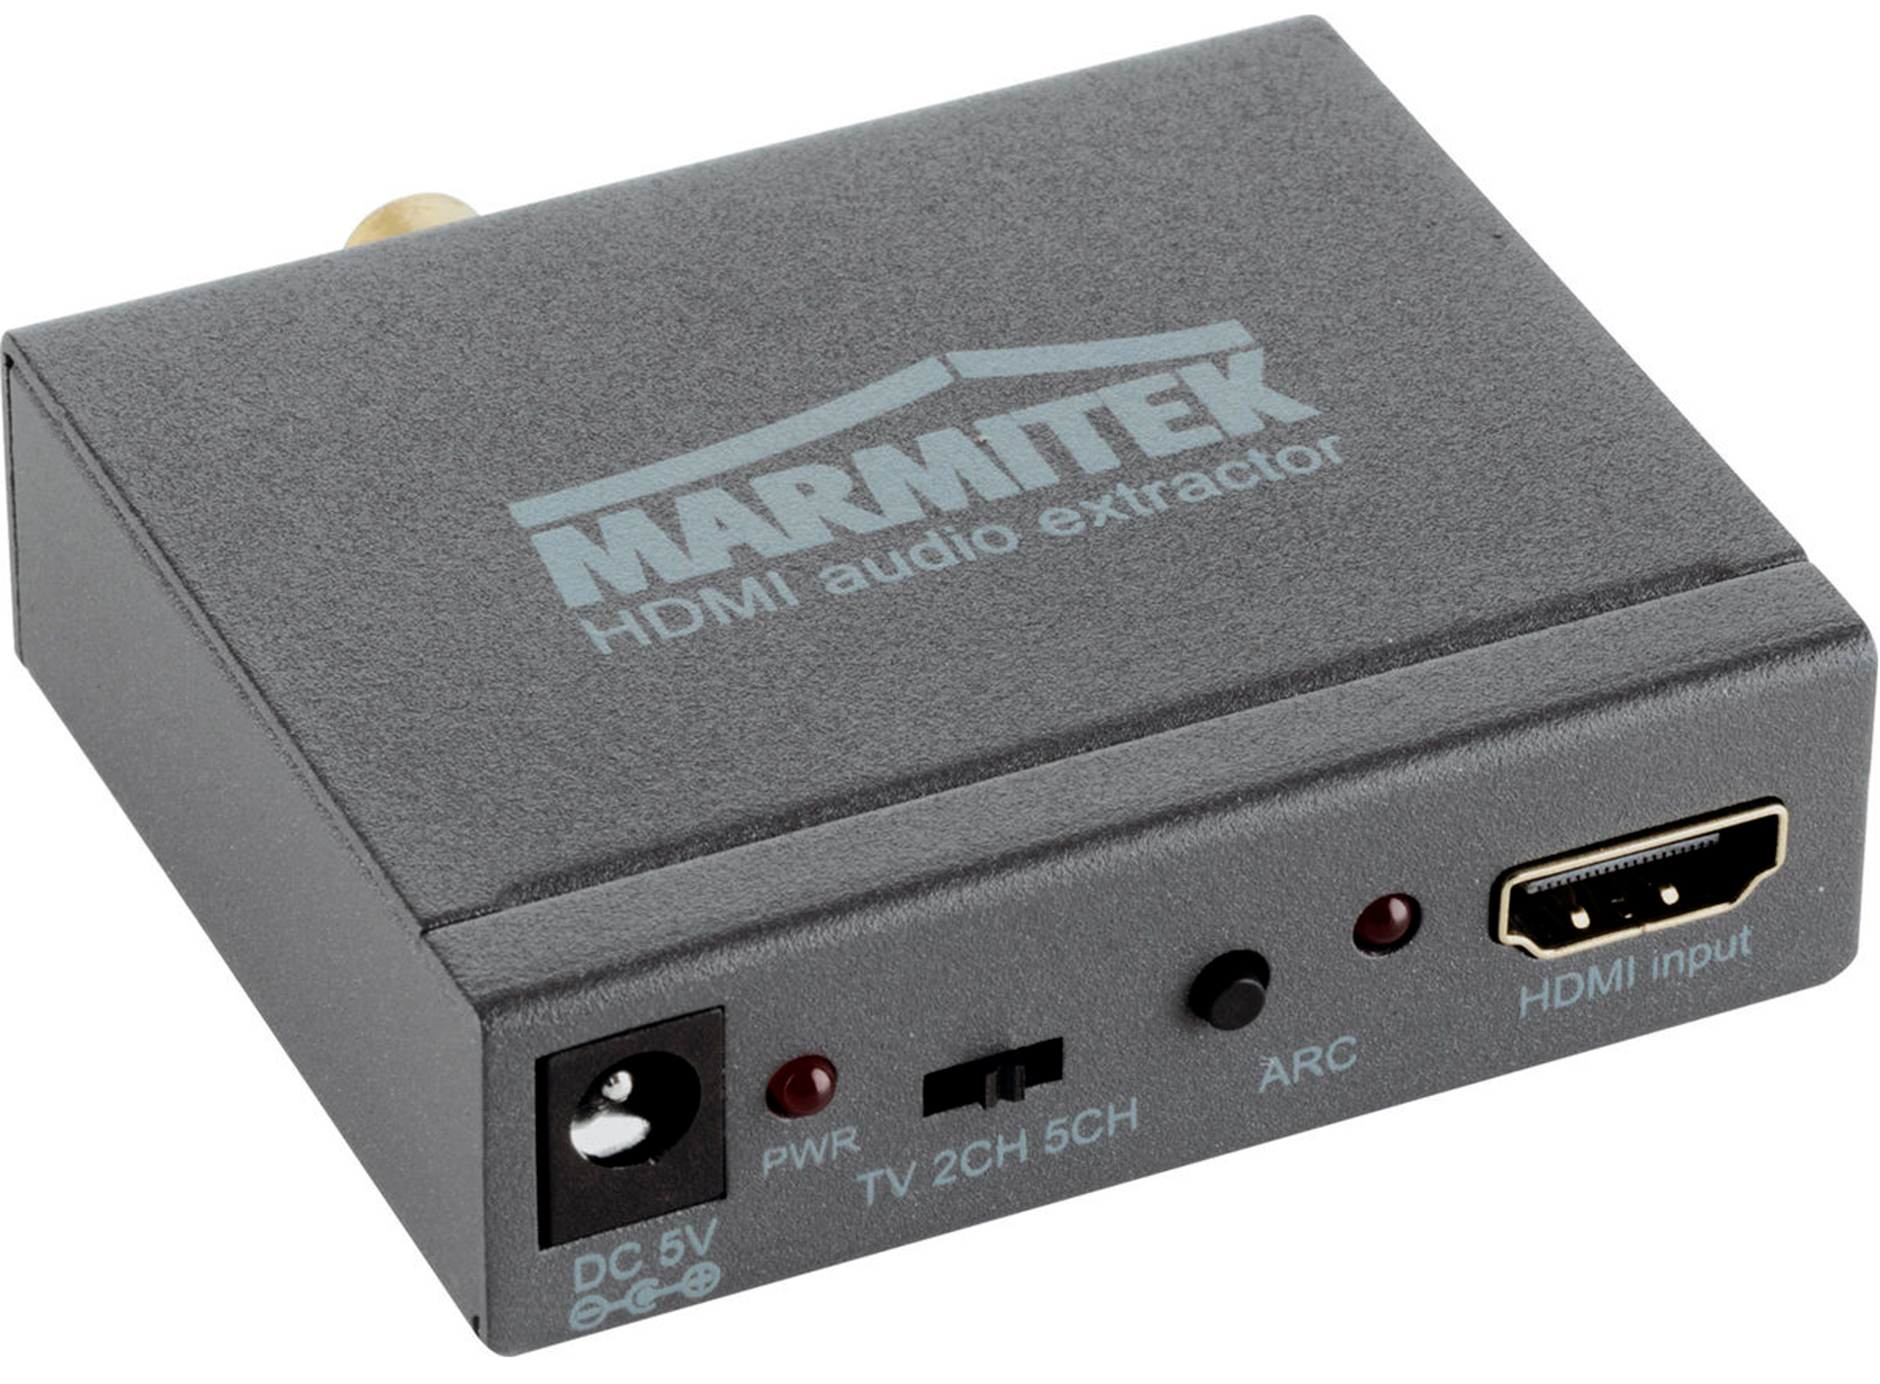 Marmitek Connect AE14 - Convertisseur HDMI - La boutique d'Eric